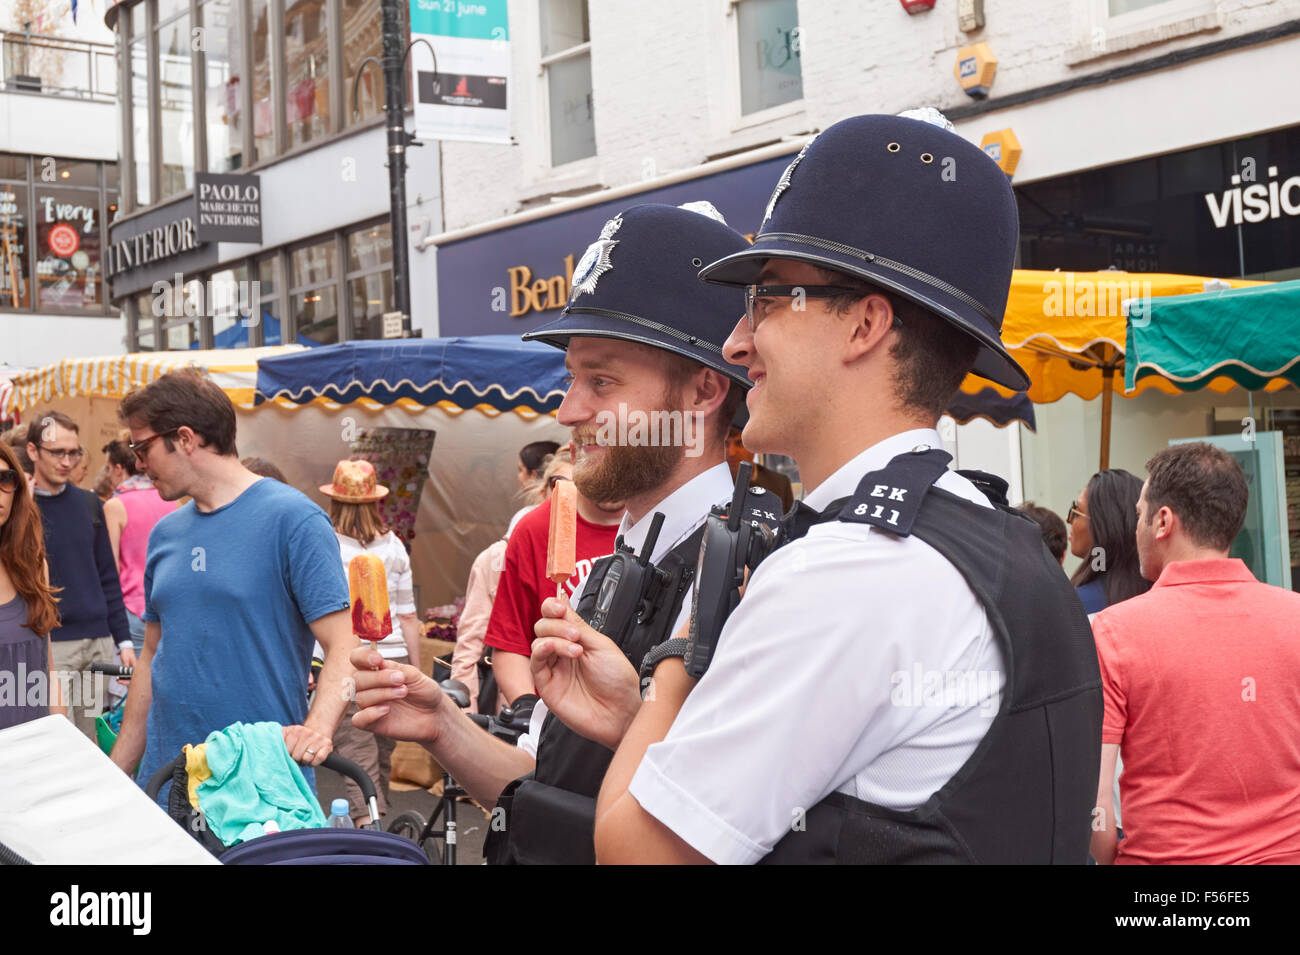 Police au festival d'été de Hampstead, Londres Angleterre Royaume-Uni Banque D'Images